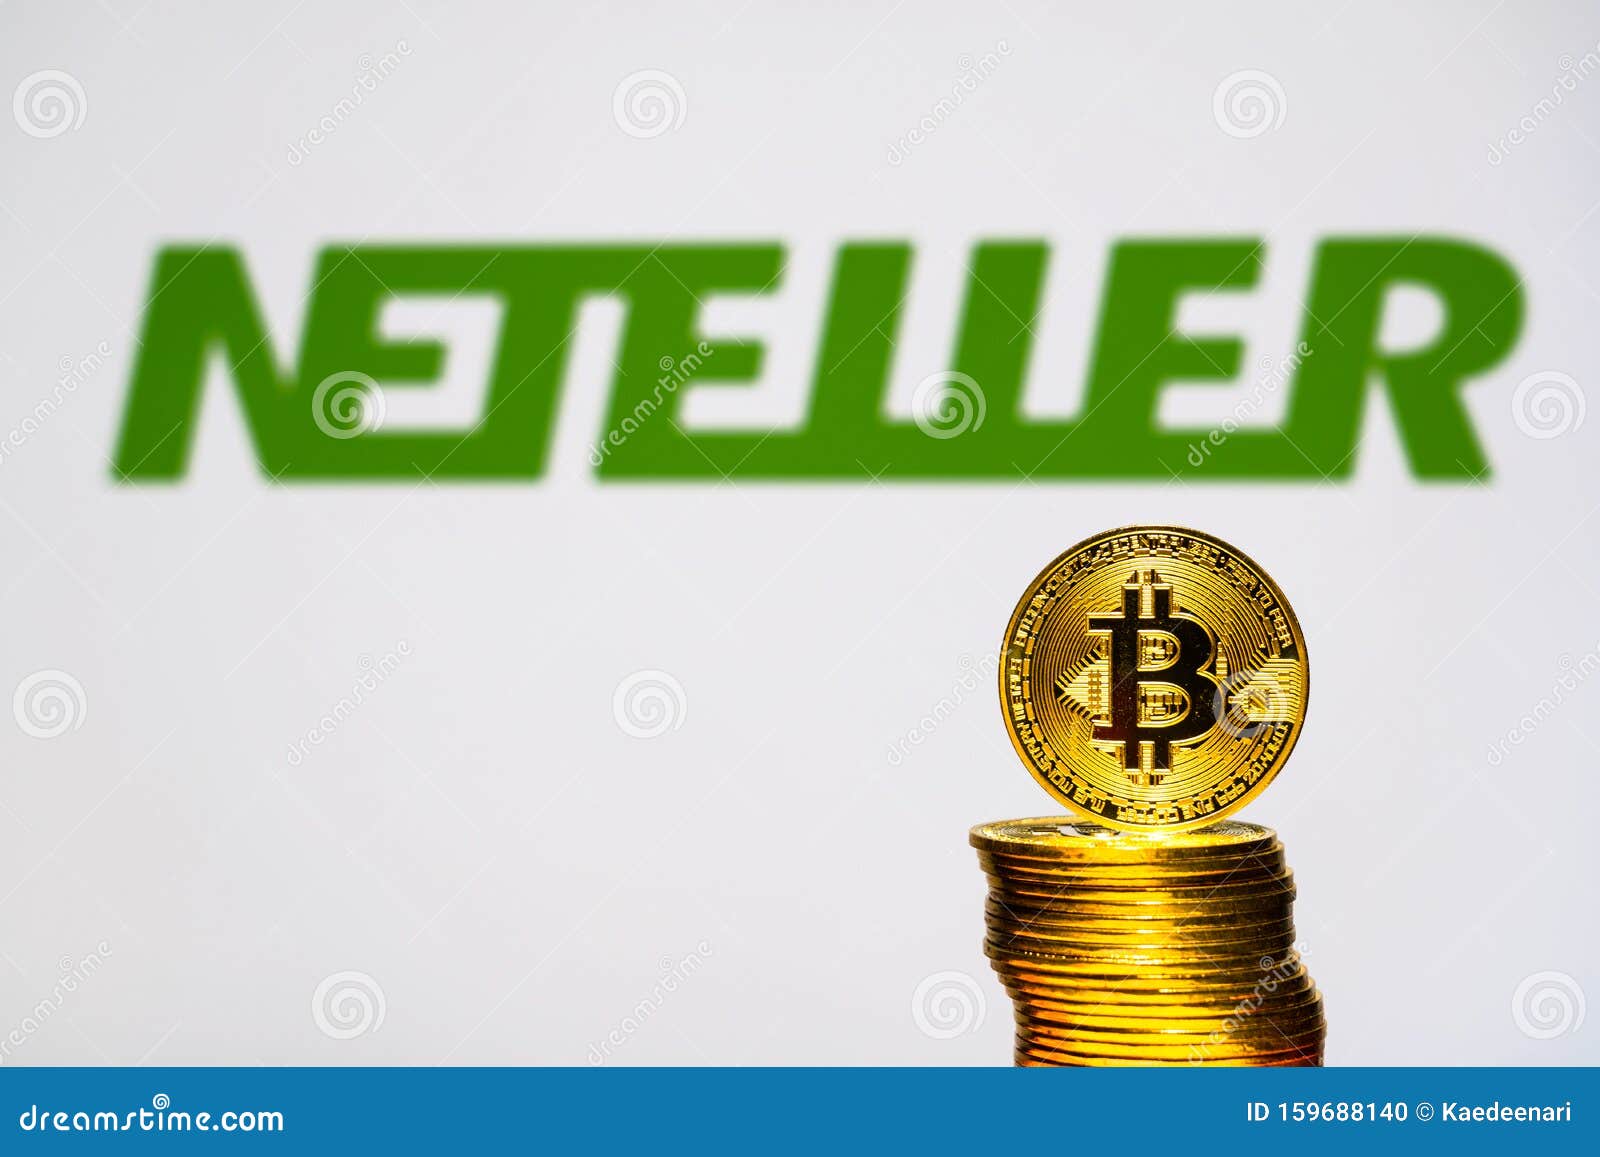 Come acquistare Bitcoin con Neteller